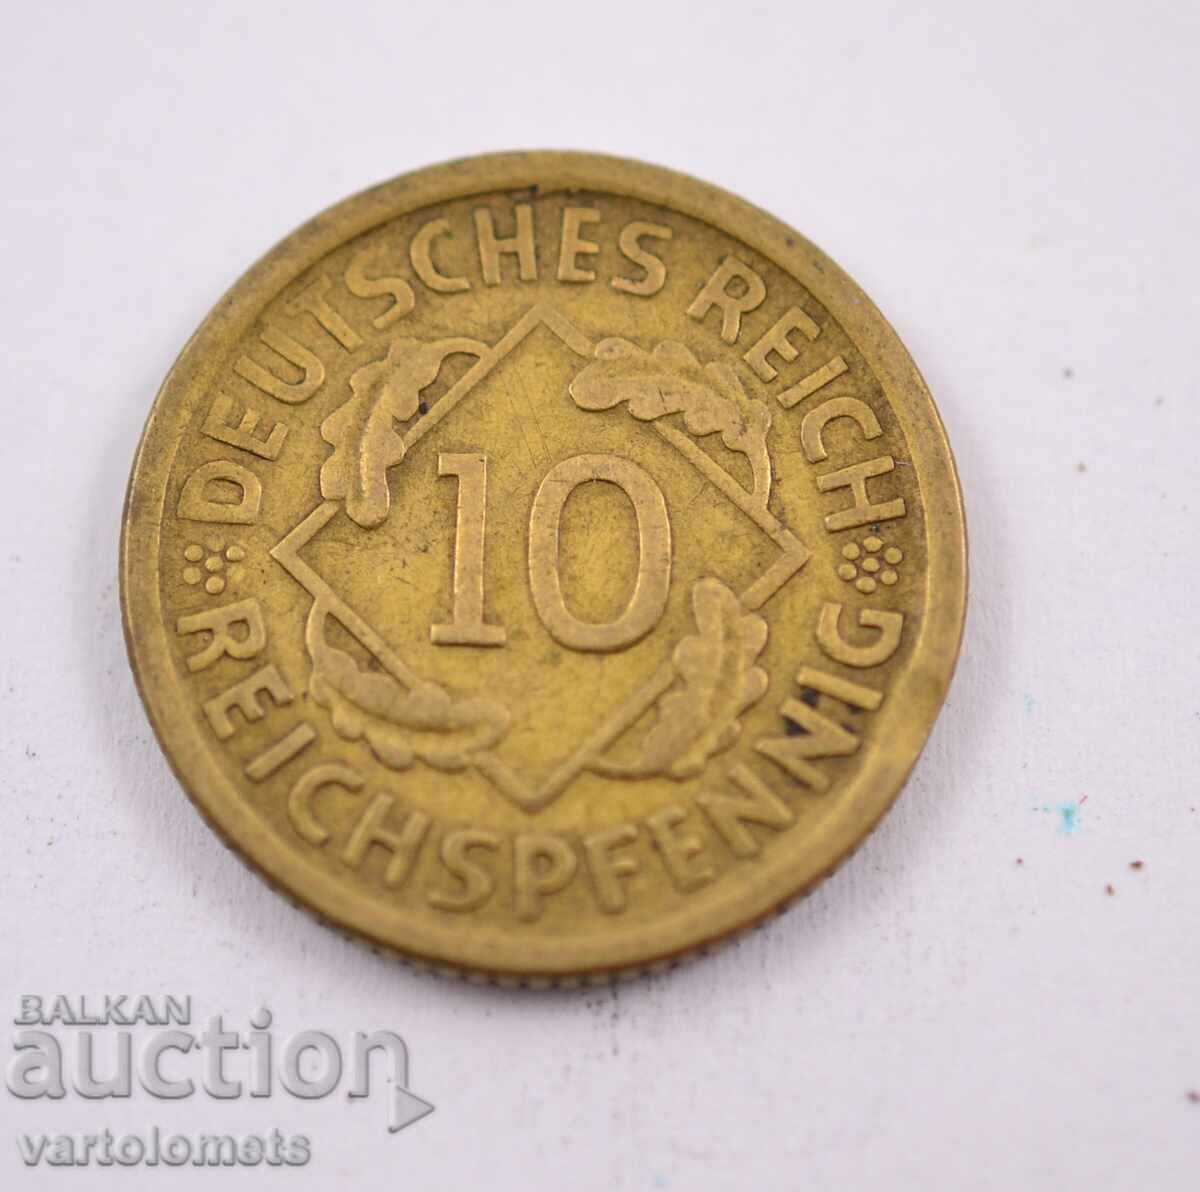 10 рент пфенига 1925  -  Германия